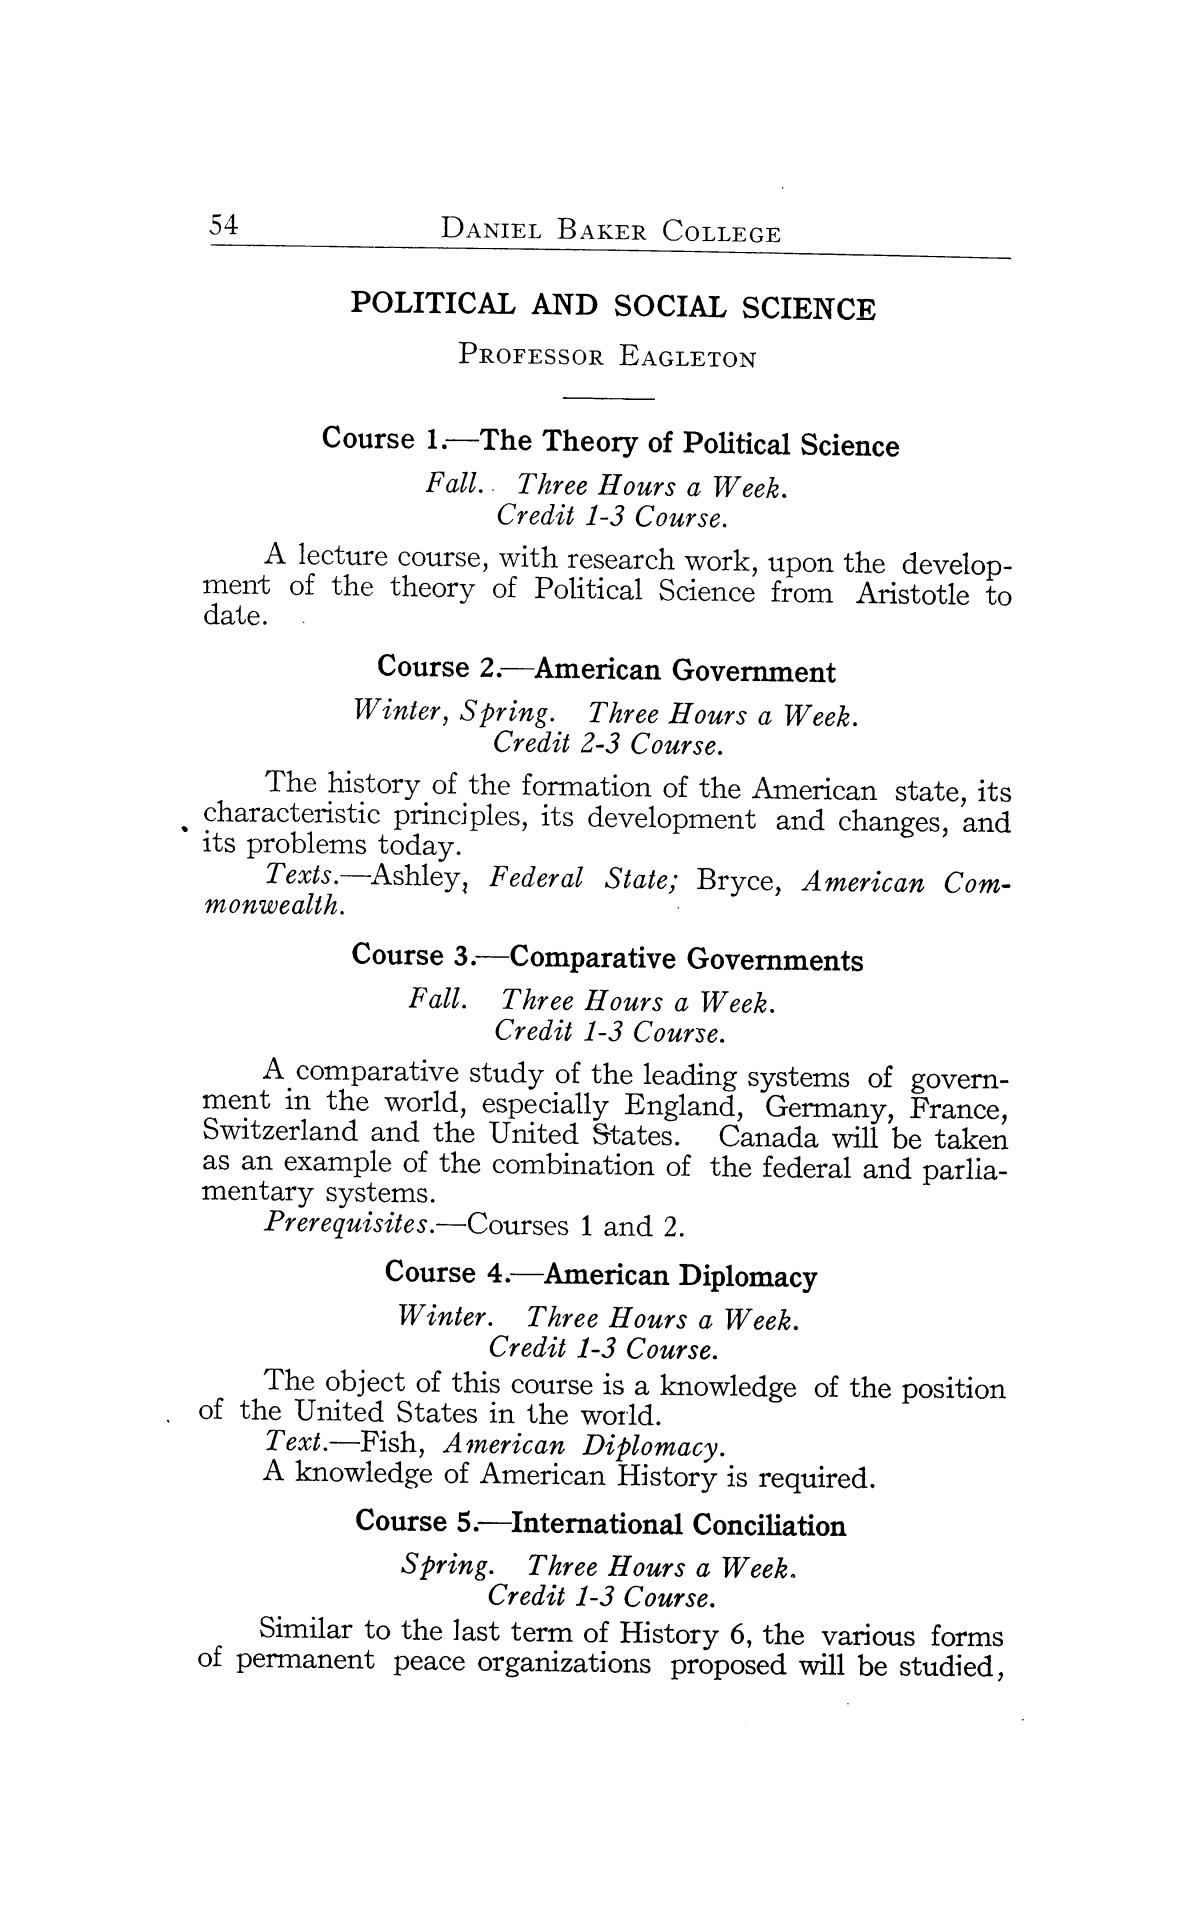 Catalog of Daniel Baker College, 1917-1918
                                                
                                                    54
                                                